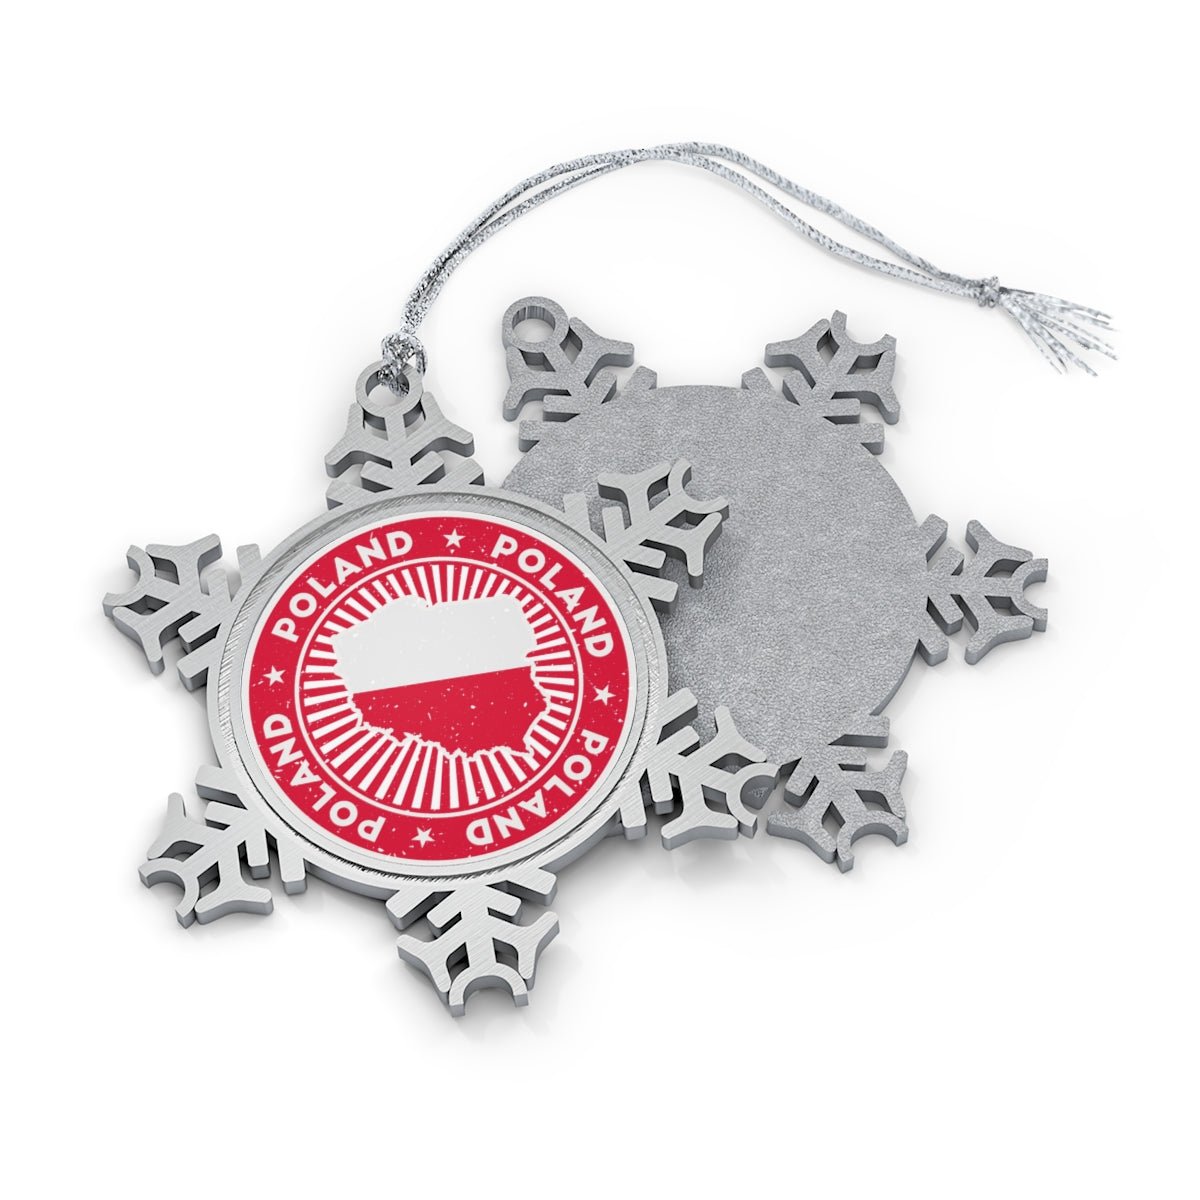 Poland Snowflake Ornament - Ezra's Clothing